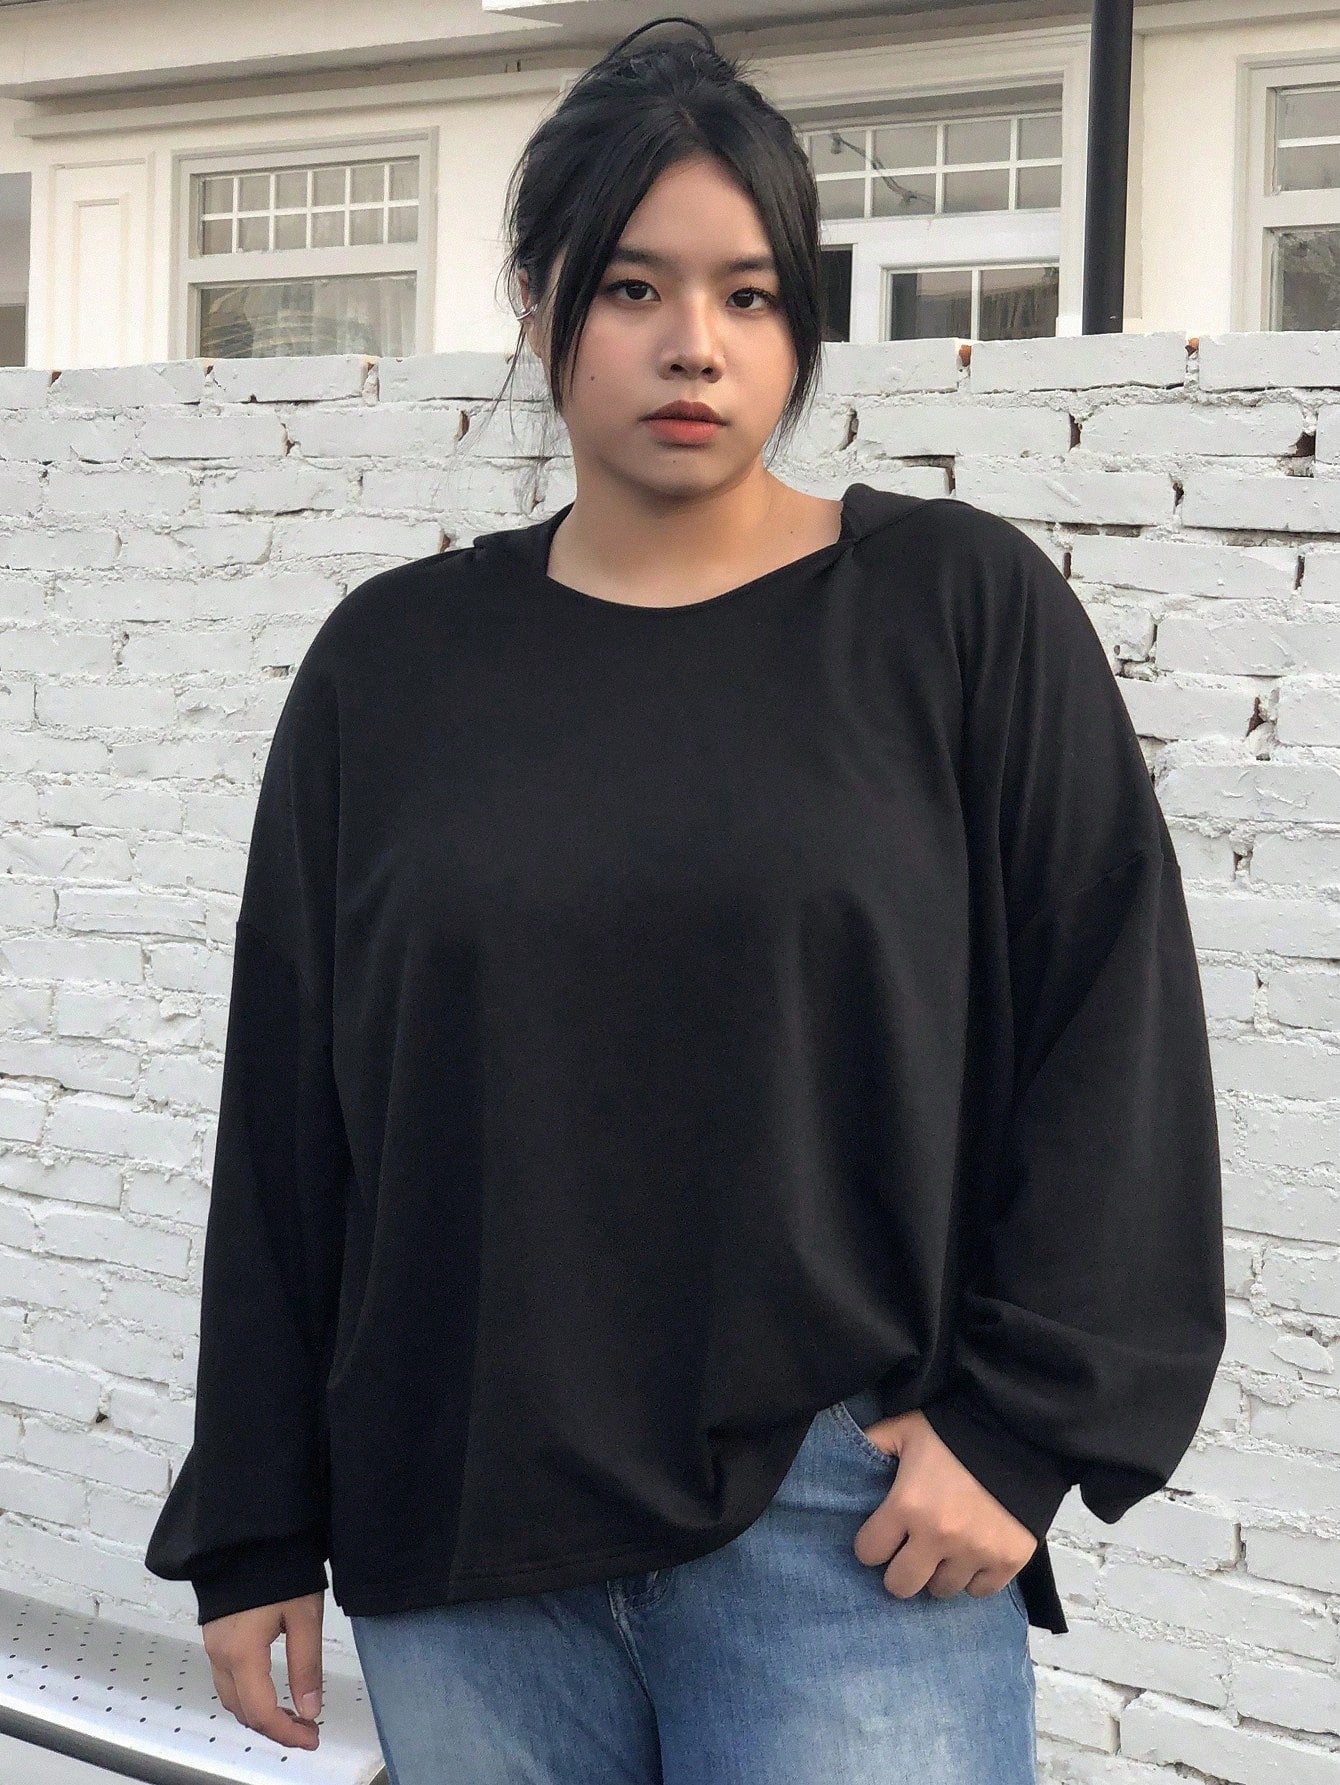 Women's Hooded Sweatshirt With Drop Shoulder Design